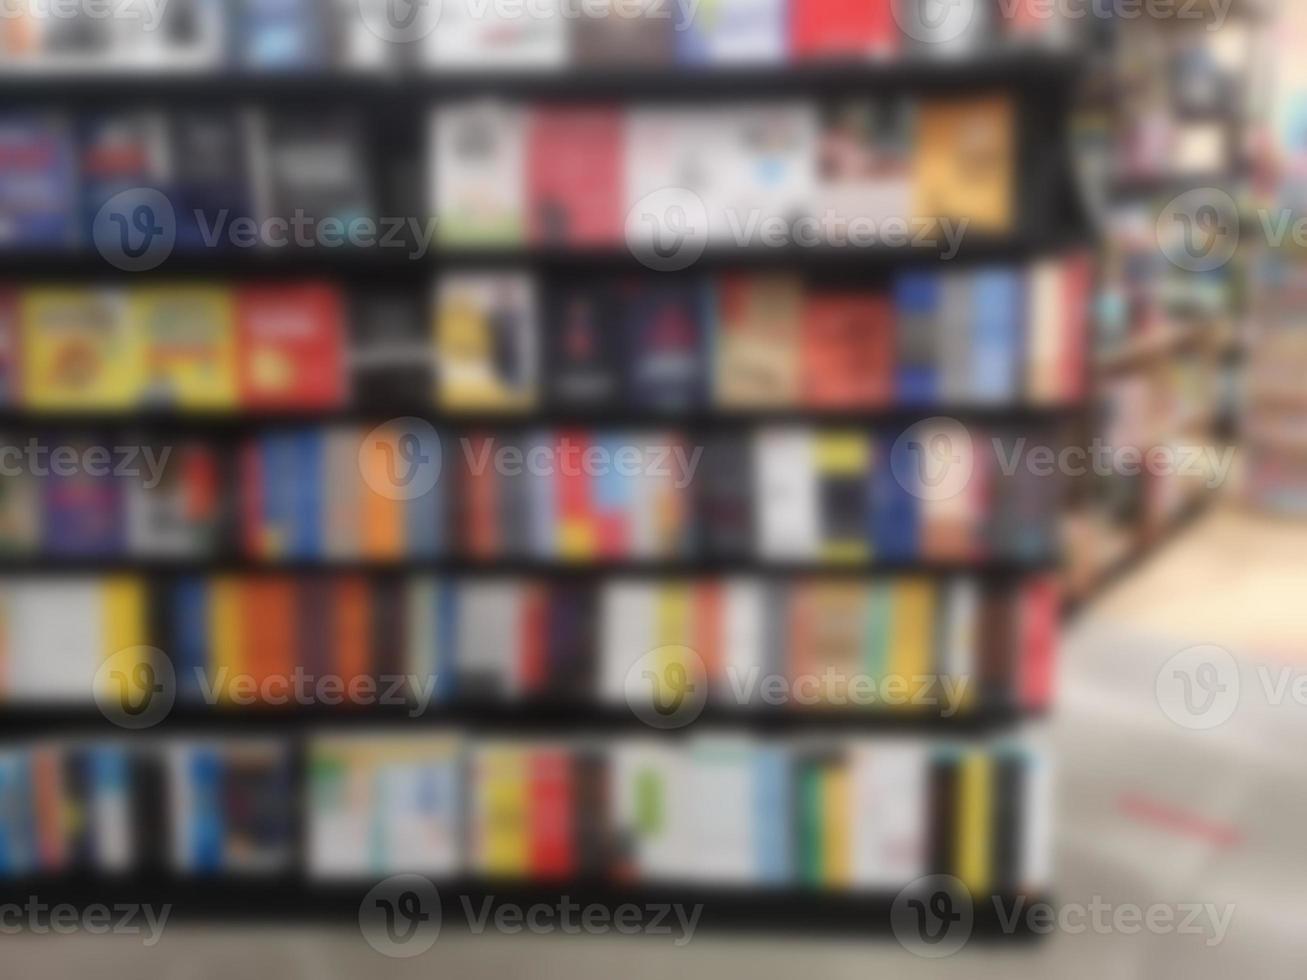 suddig av böcker ordnade på hyllor, bokhylla i butiken eller biblioteket, bakgrund foto